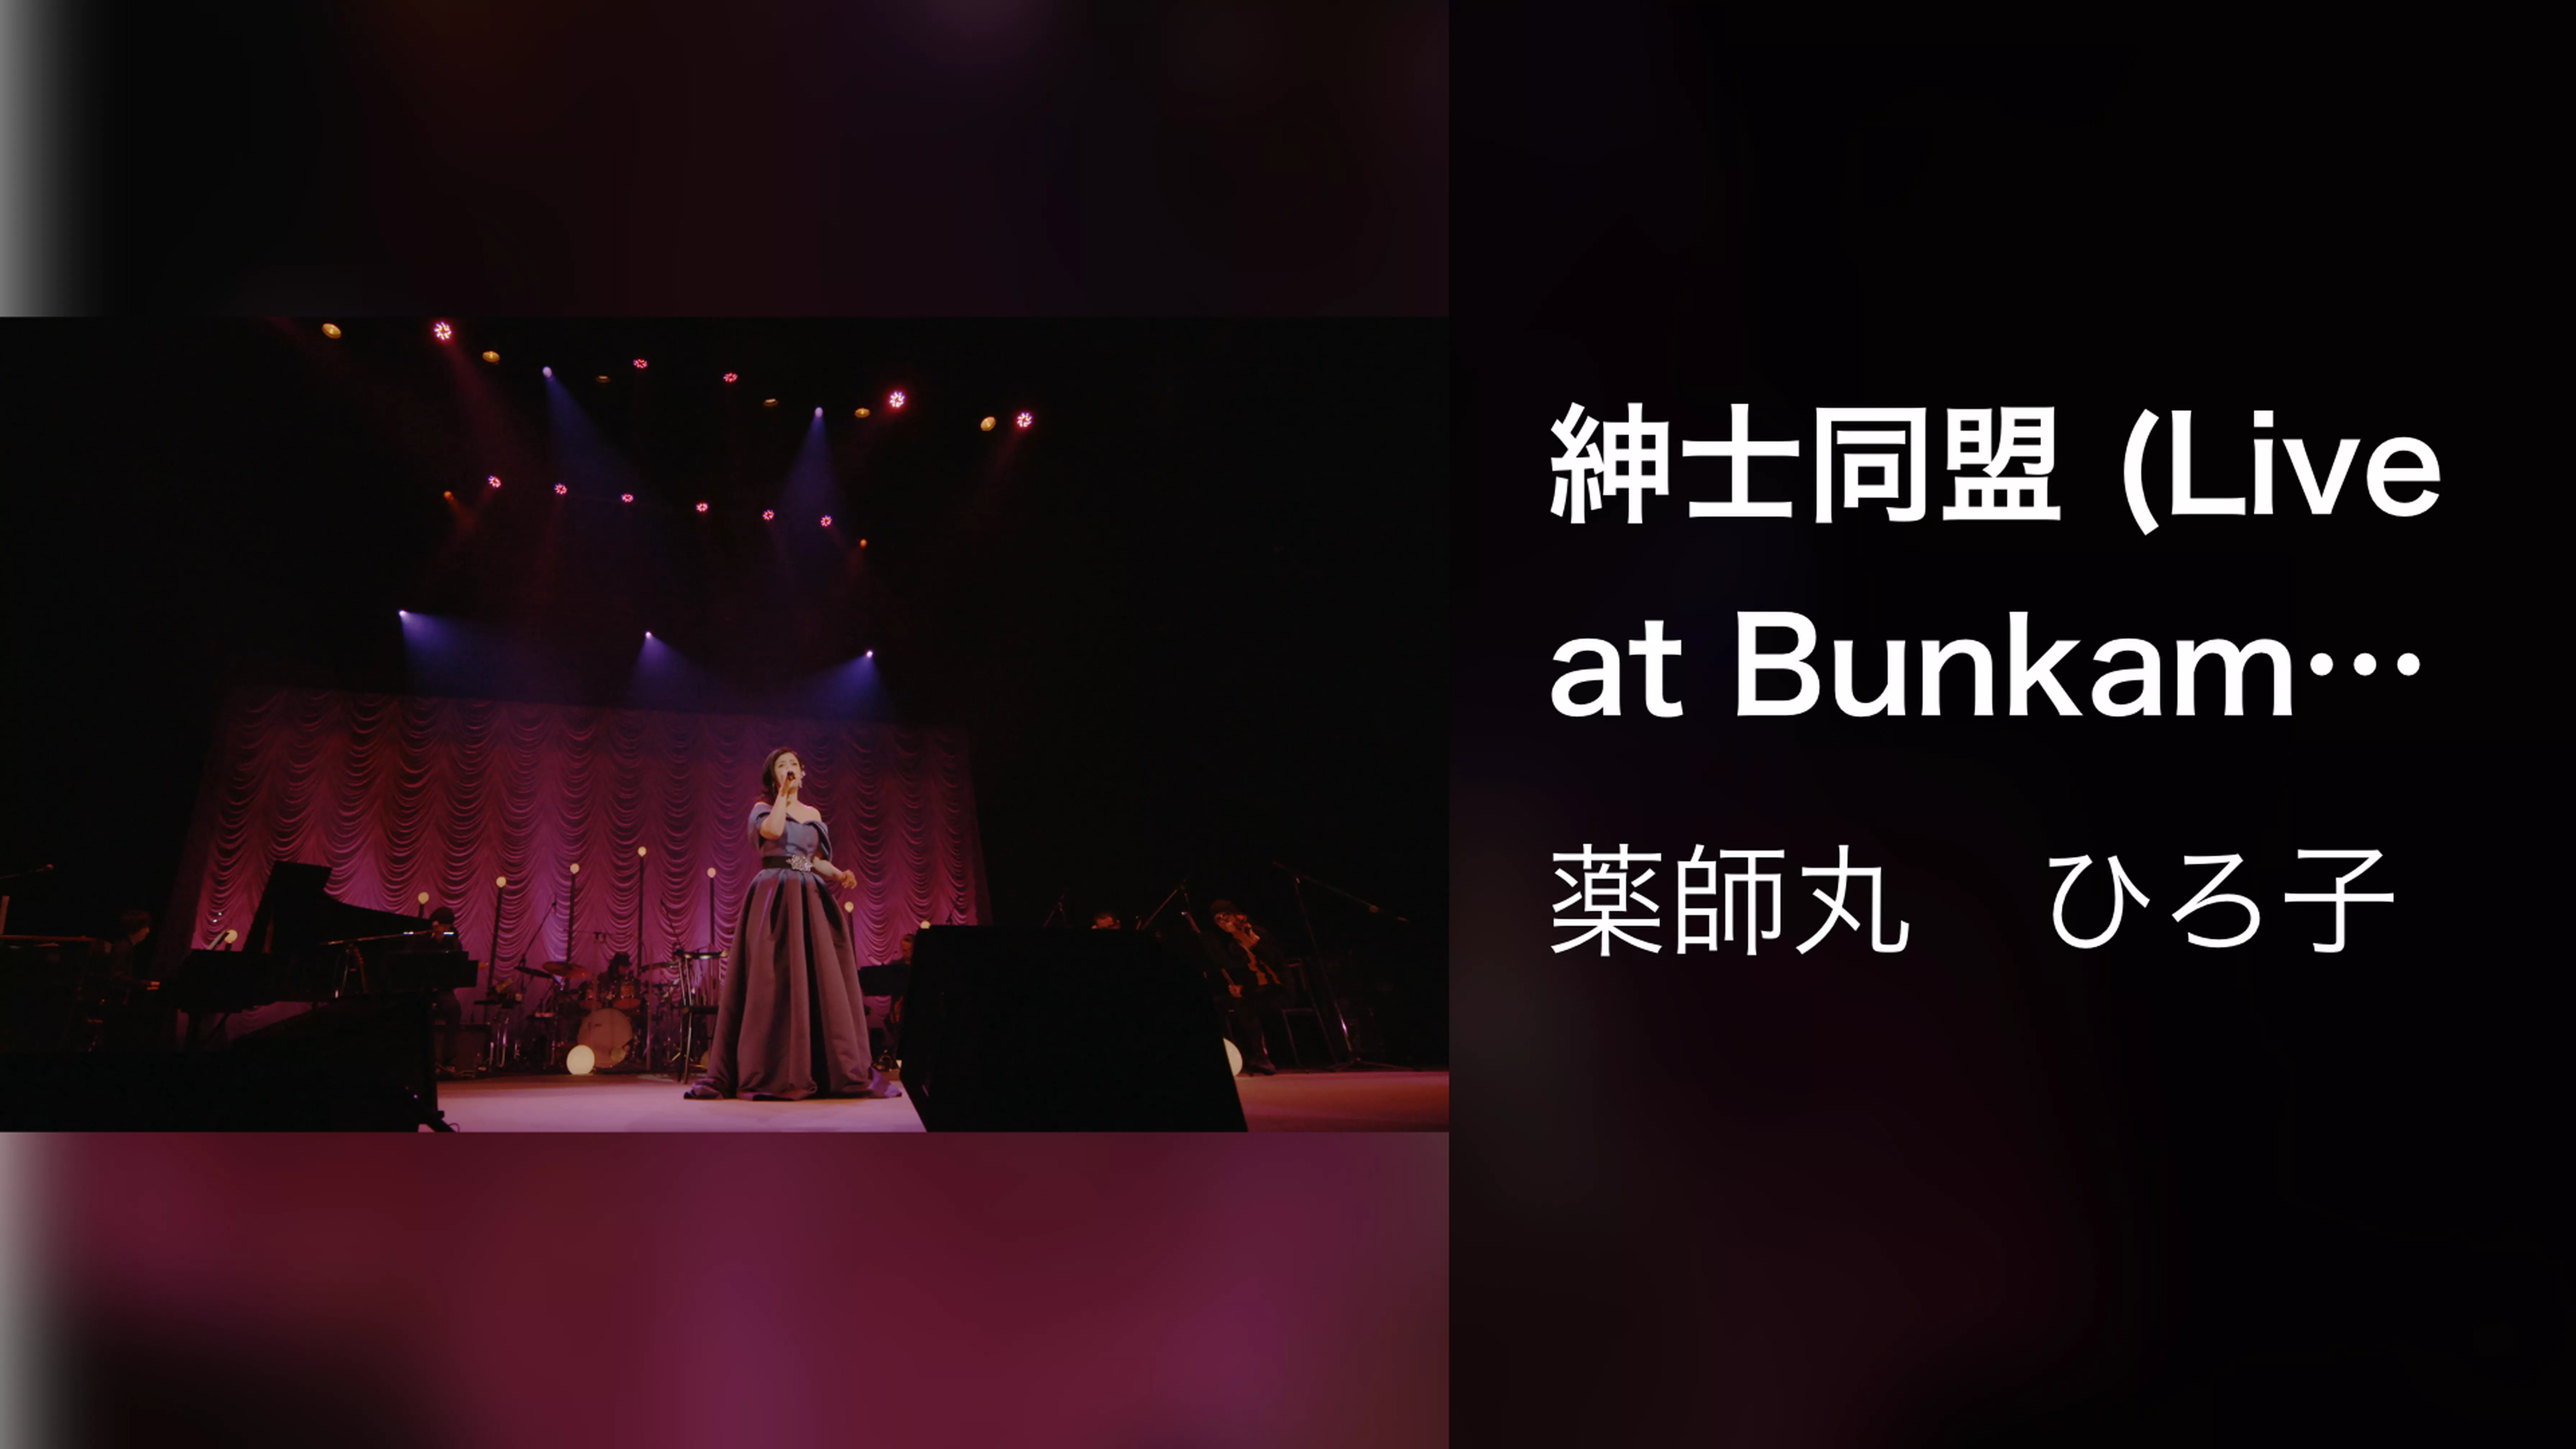 紳士同盟 (Live at Bunkamura Orchard Hall on October 26, 2019)